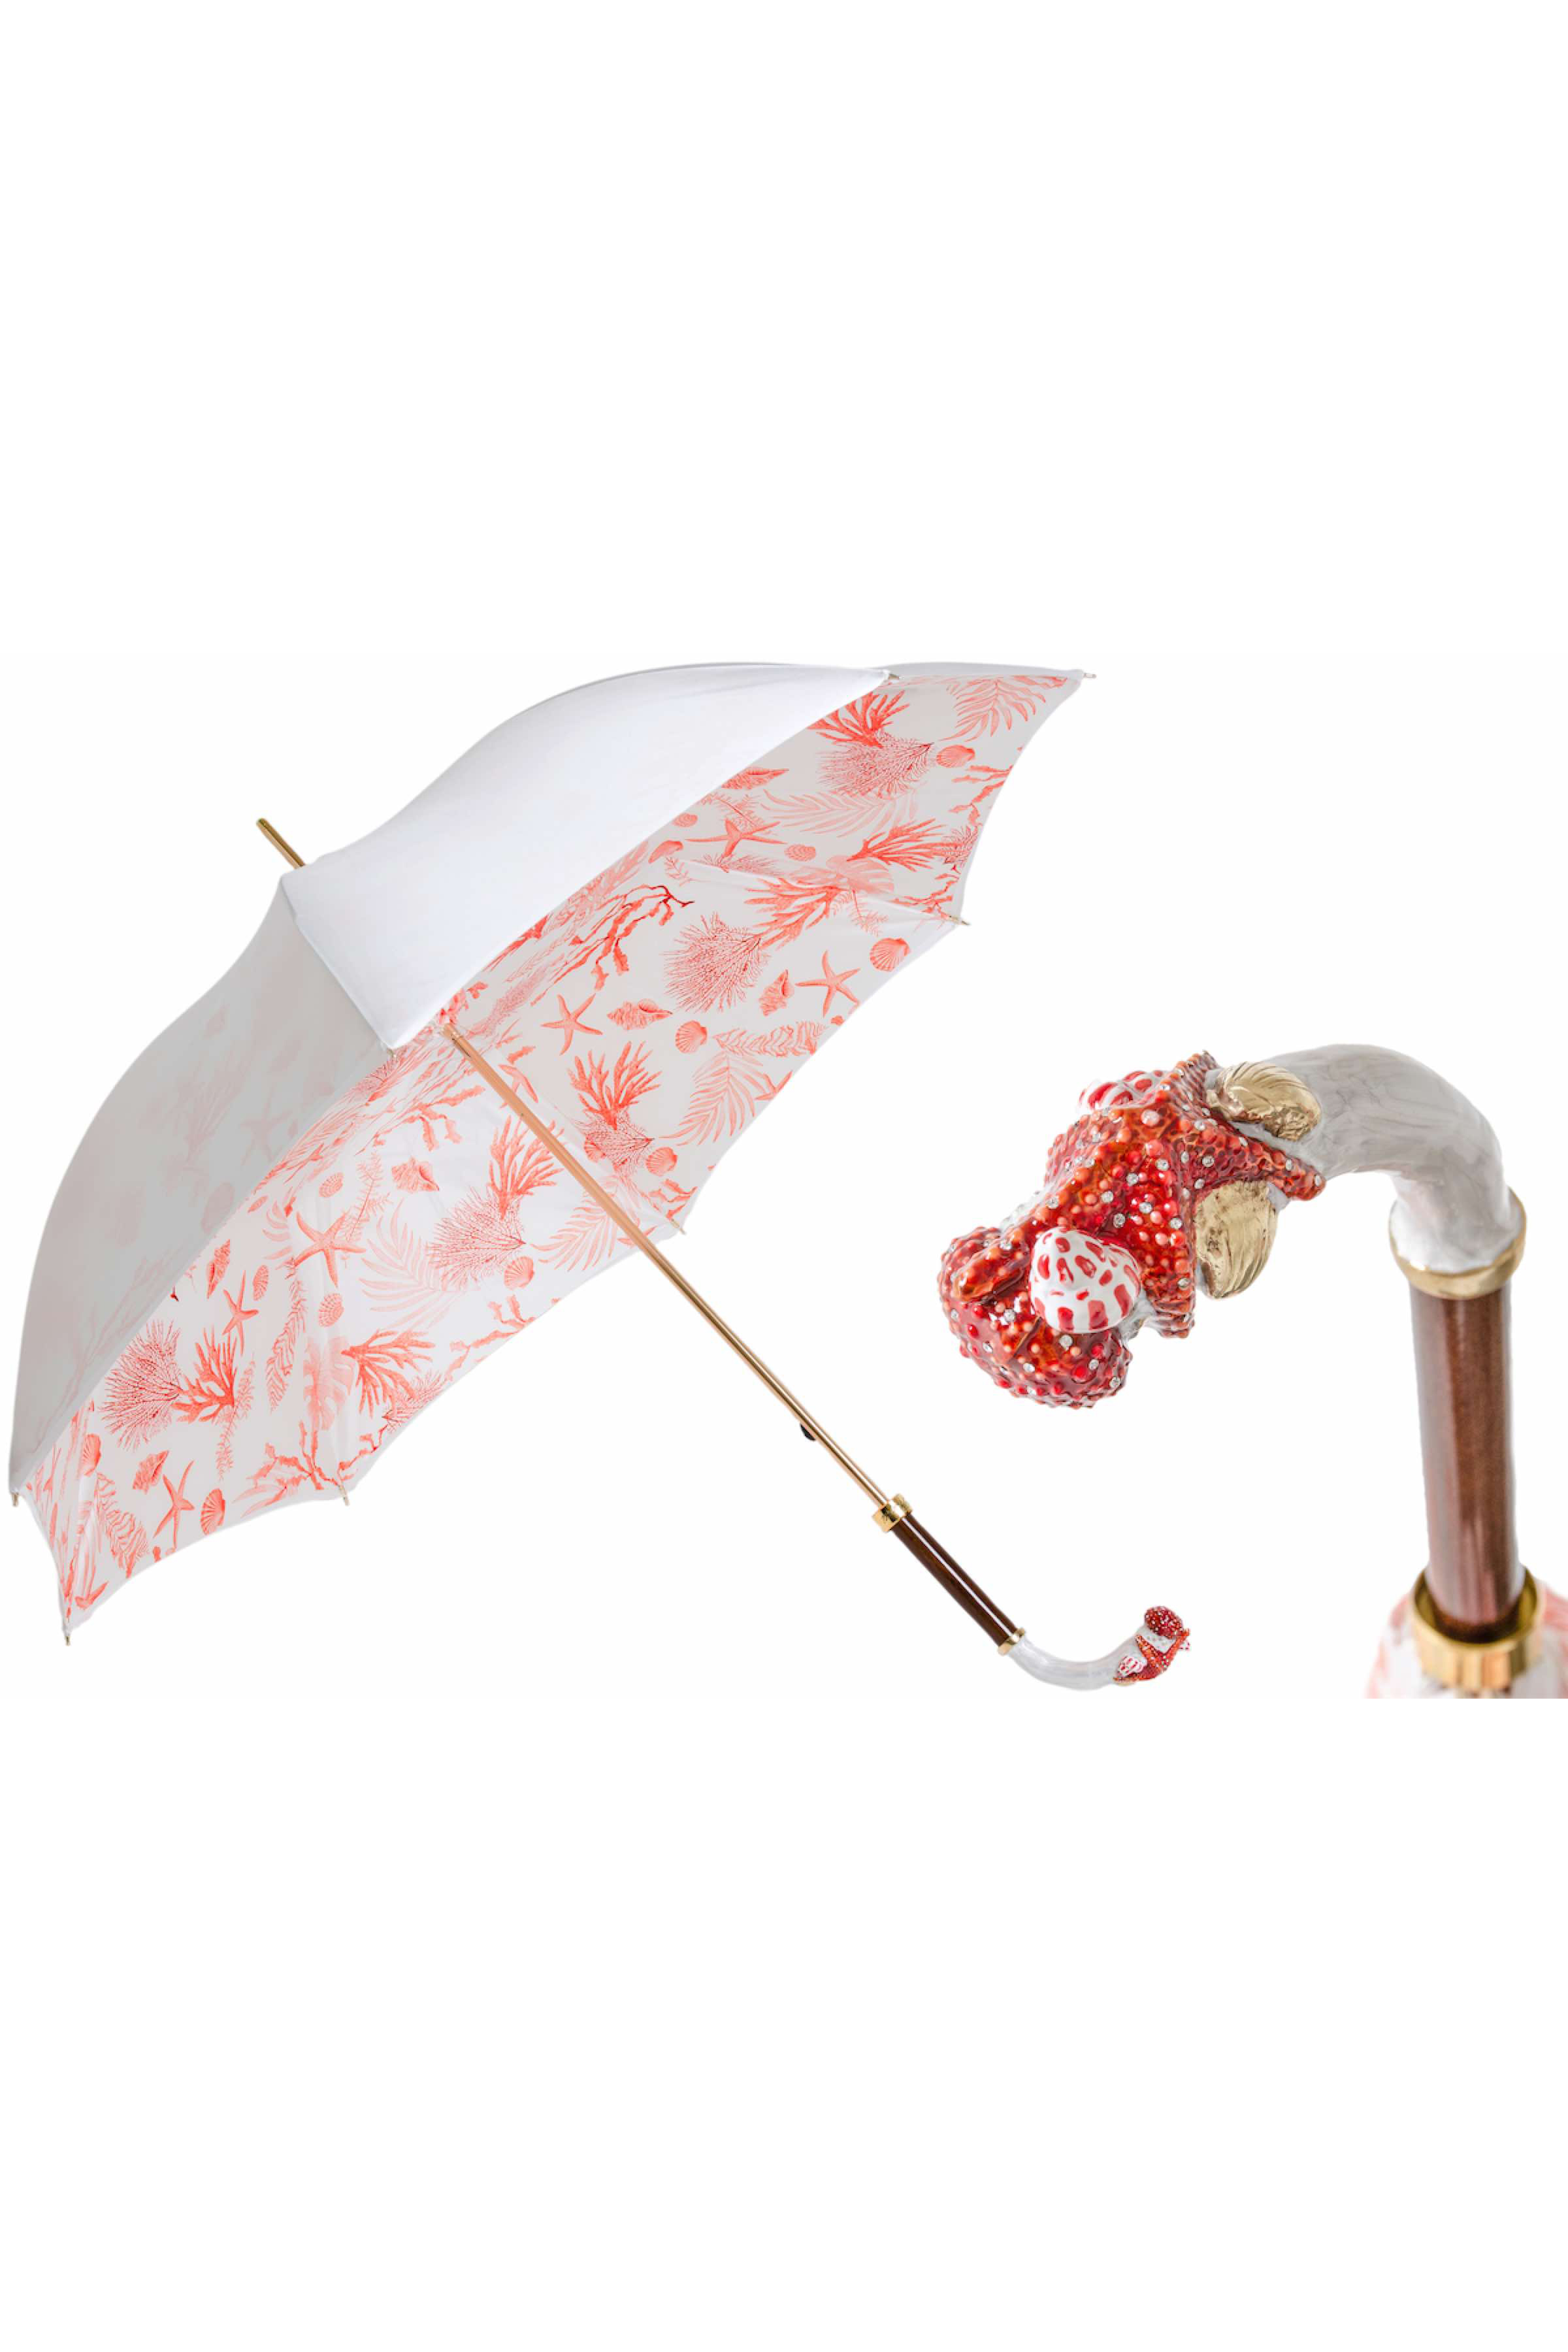 PASOTTI Luxus-Regenschirm mit Seestern und Korallen | rot-weißer Sonnenschirm